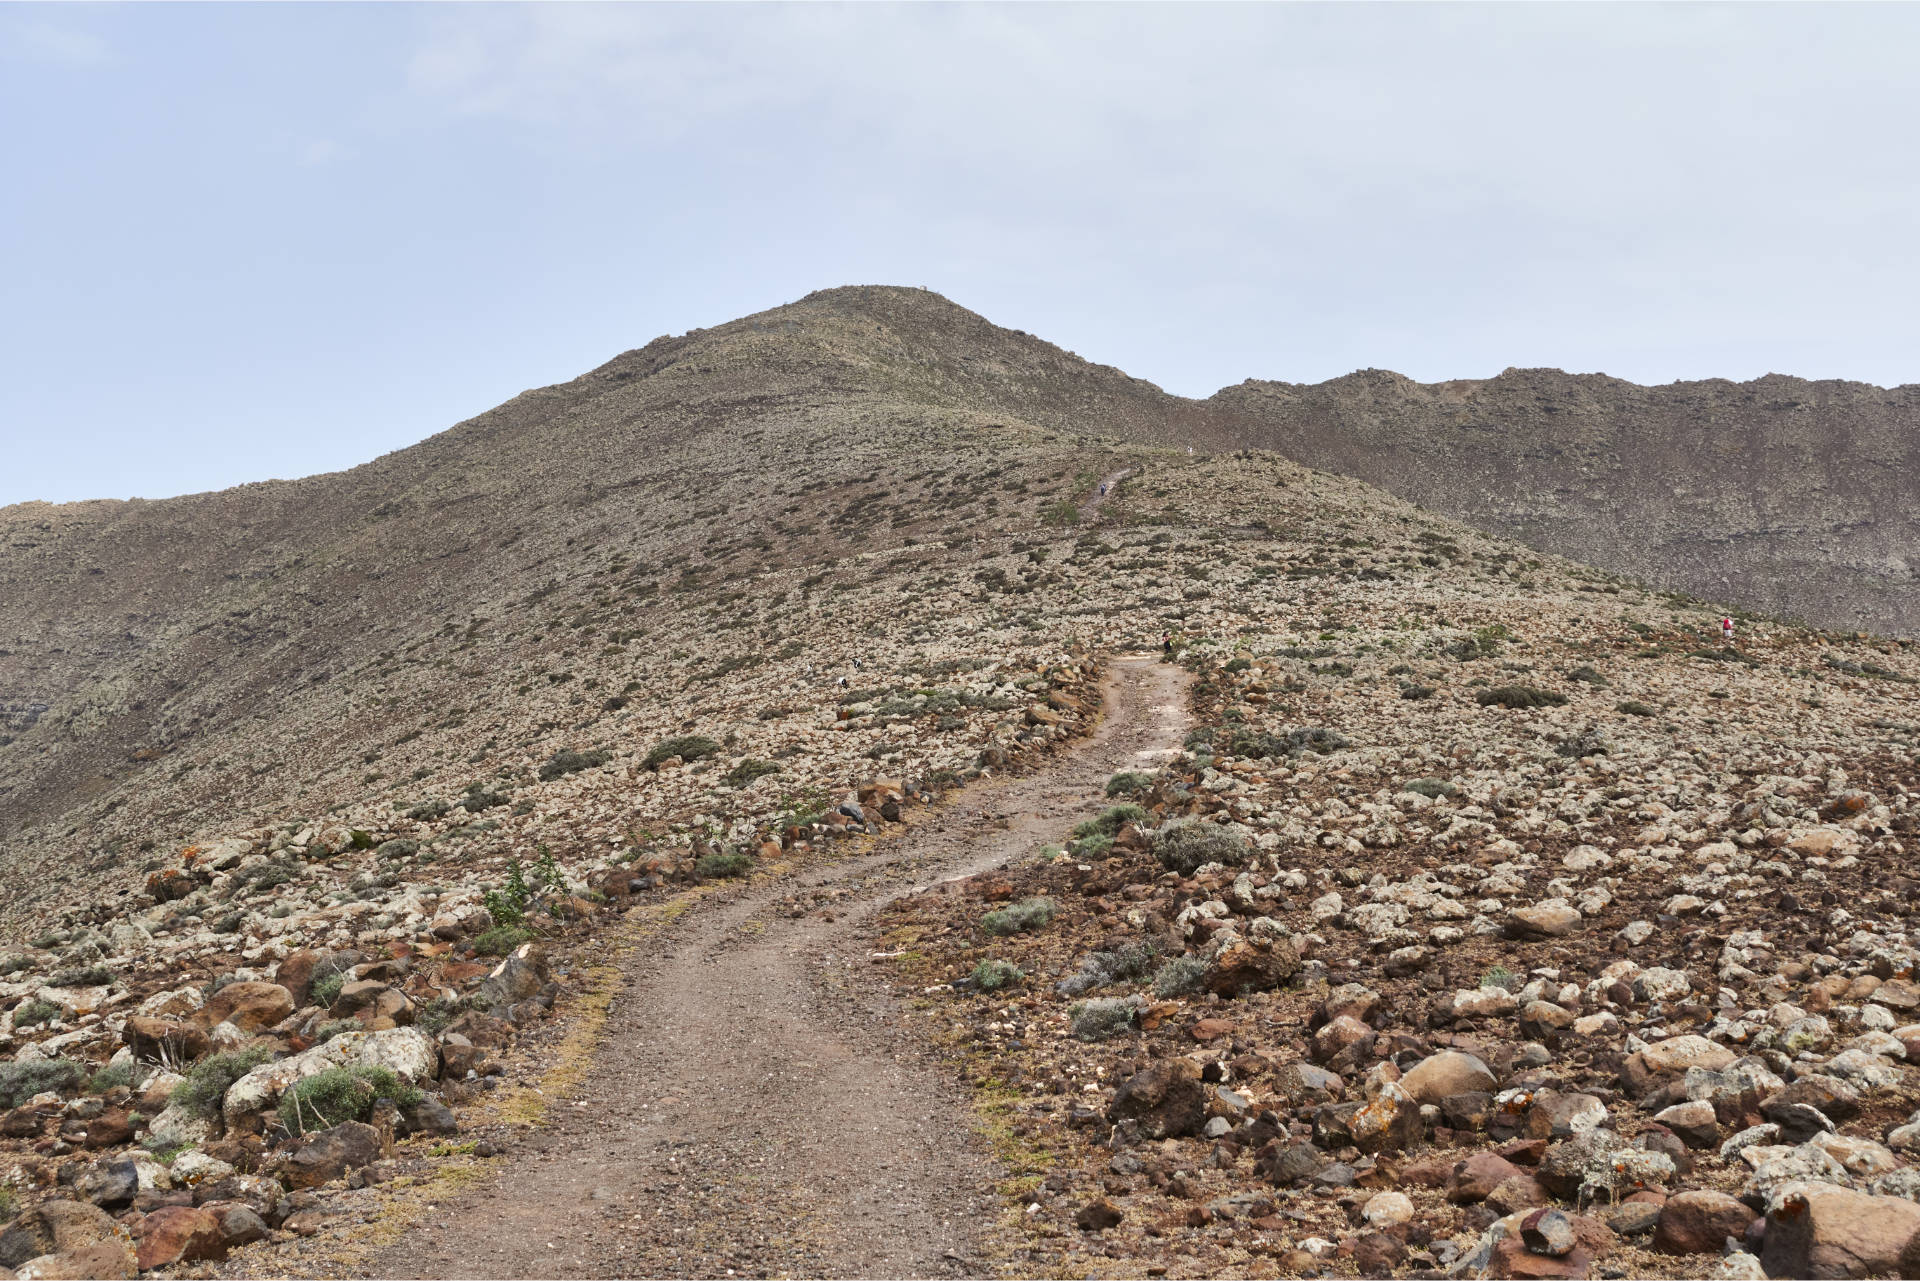 Der Jeepweg wird schlechter und steiler, endet an einem Wegweiser auf 607m, ein guter Wanderweg leitet zum Pico de la Zarza.